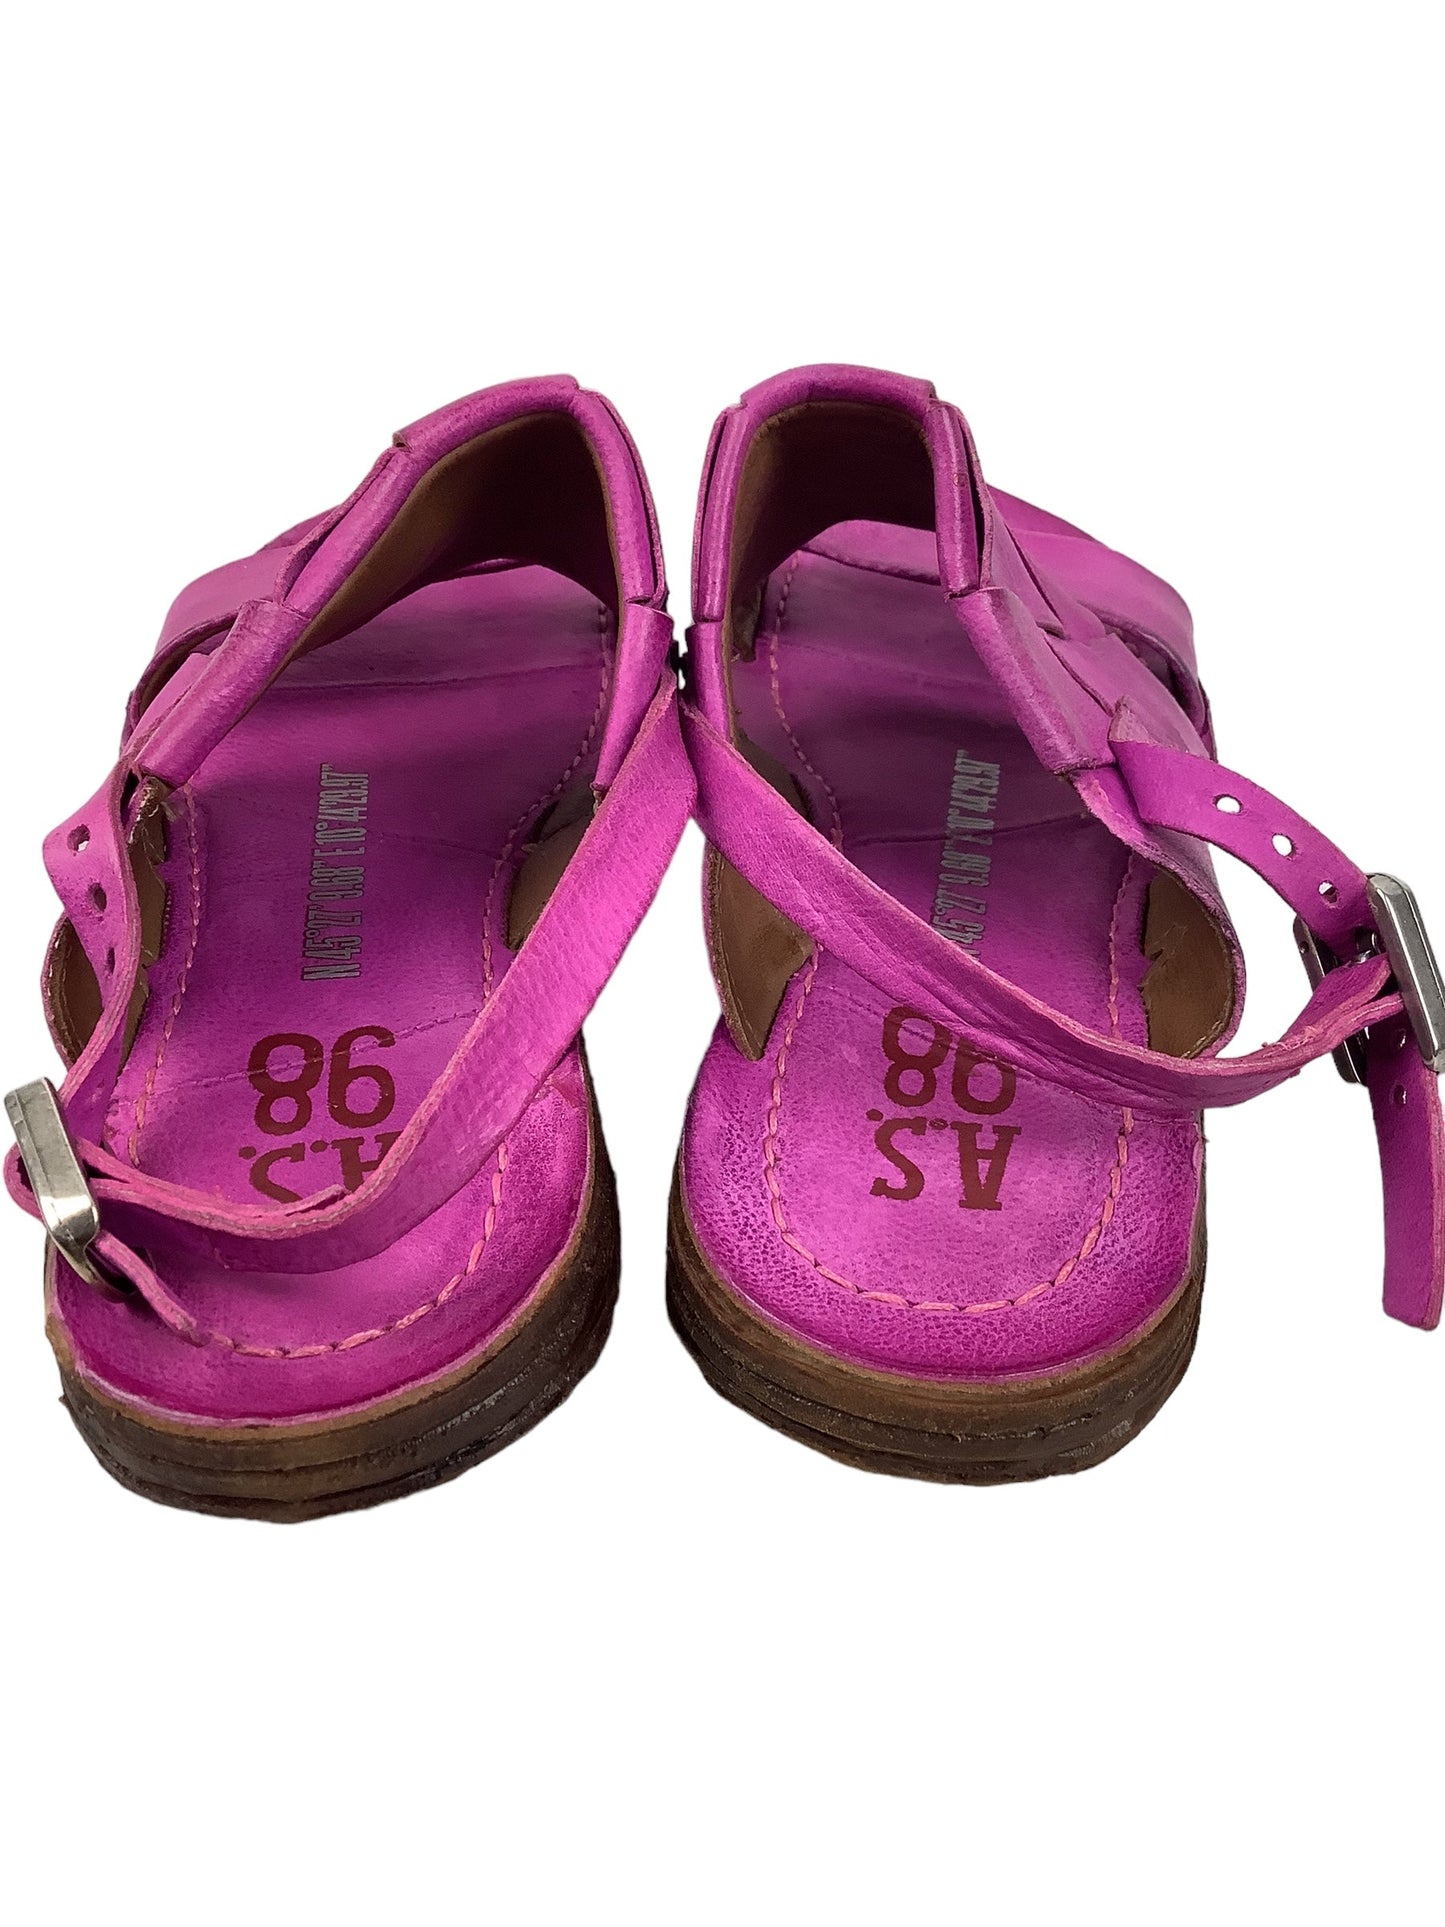 Purple Shoes Flats Clothes Mentor, Size 5.5